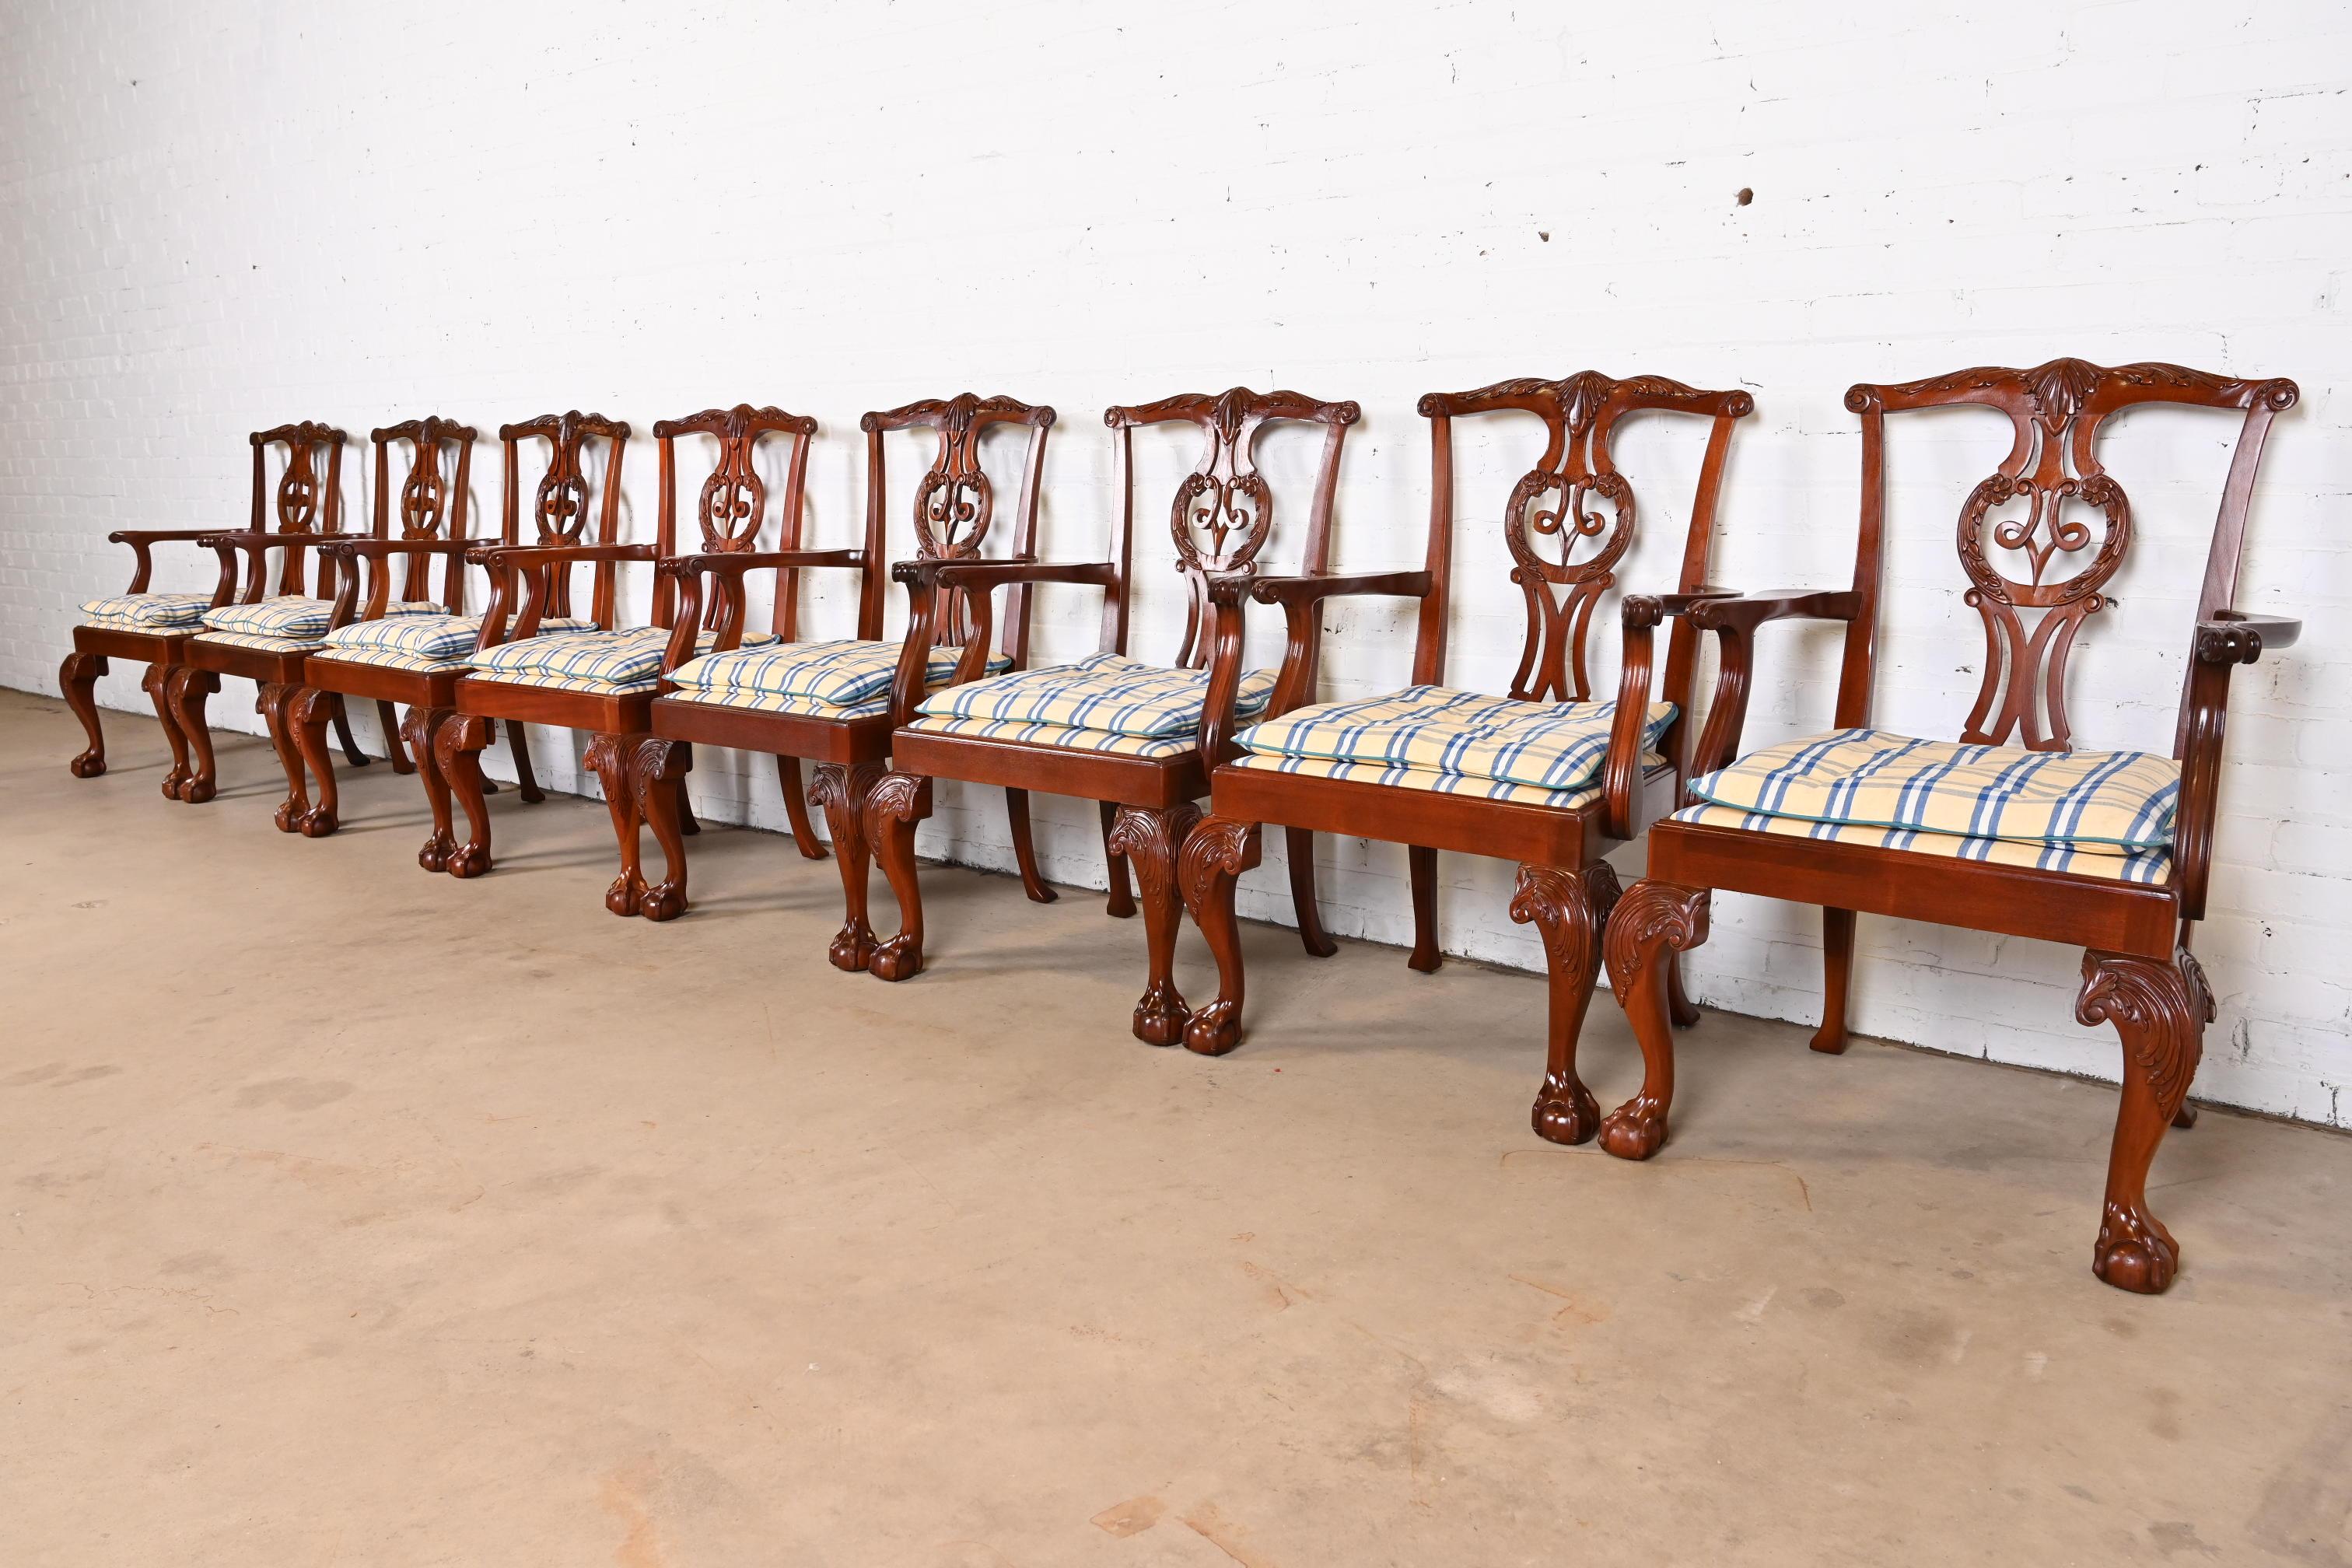 Ensemble exceptionnel de huit fauteuils de salle à manger de style Chippendale ou géorgien

Par Baker Furniture

États-Unis, vers les années 1980

Cadre en acajou massif sculpté, avec pieds cabriole et pieds boule et griffe, et tapisserie écossaise